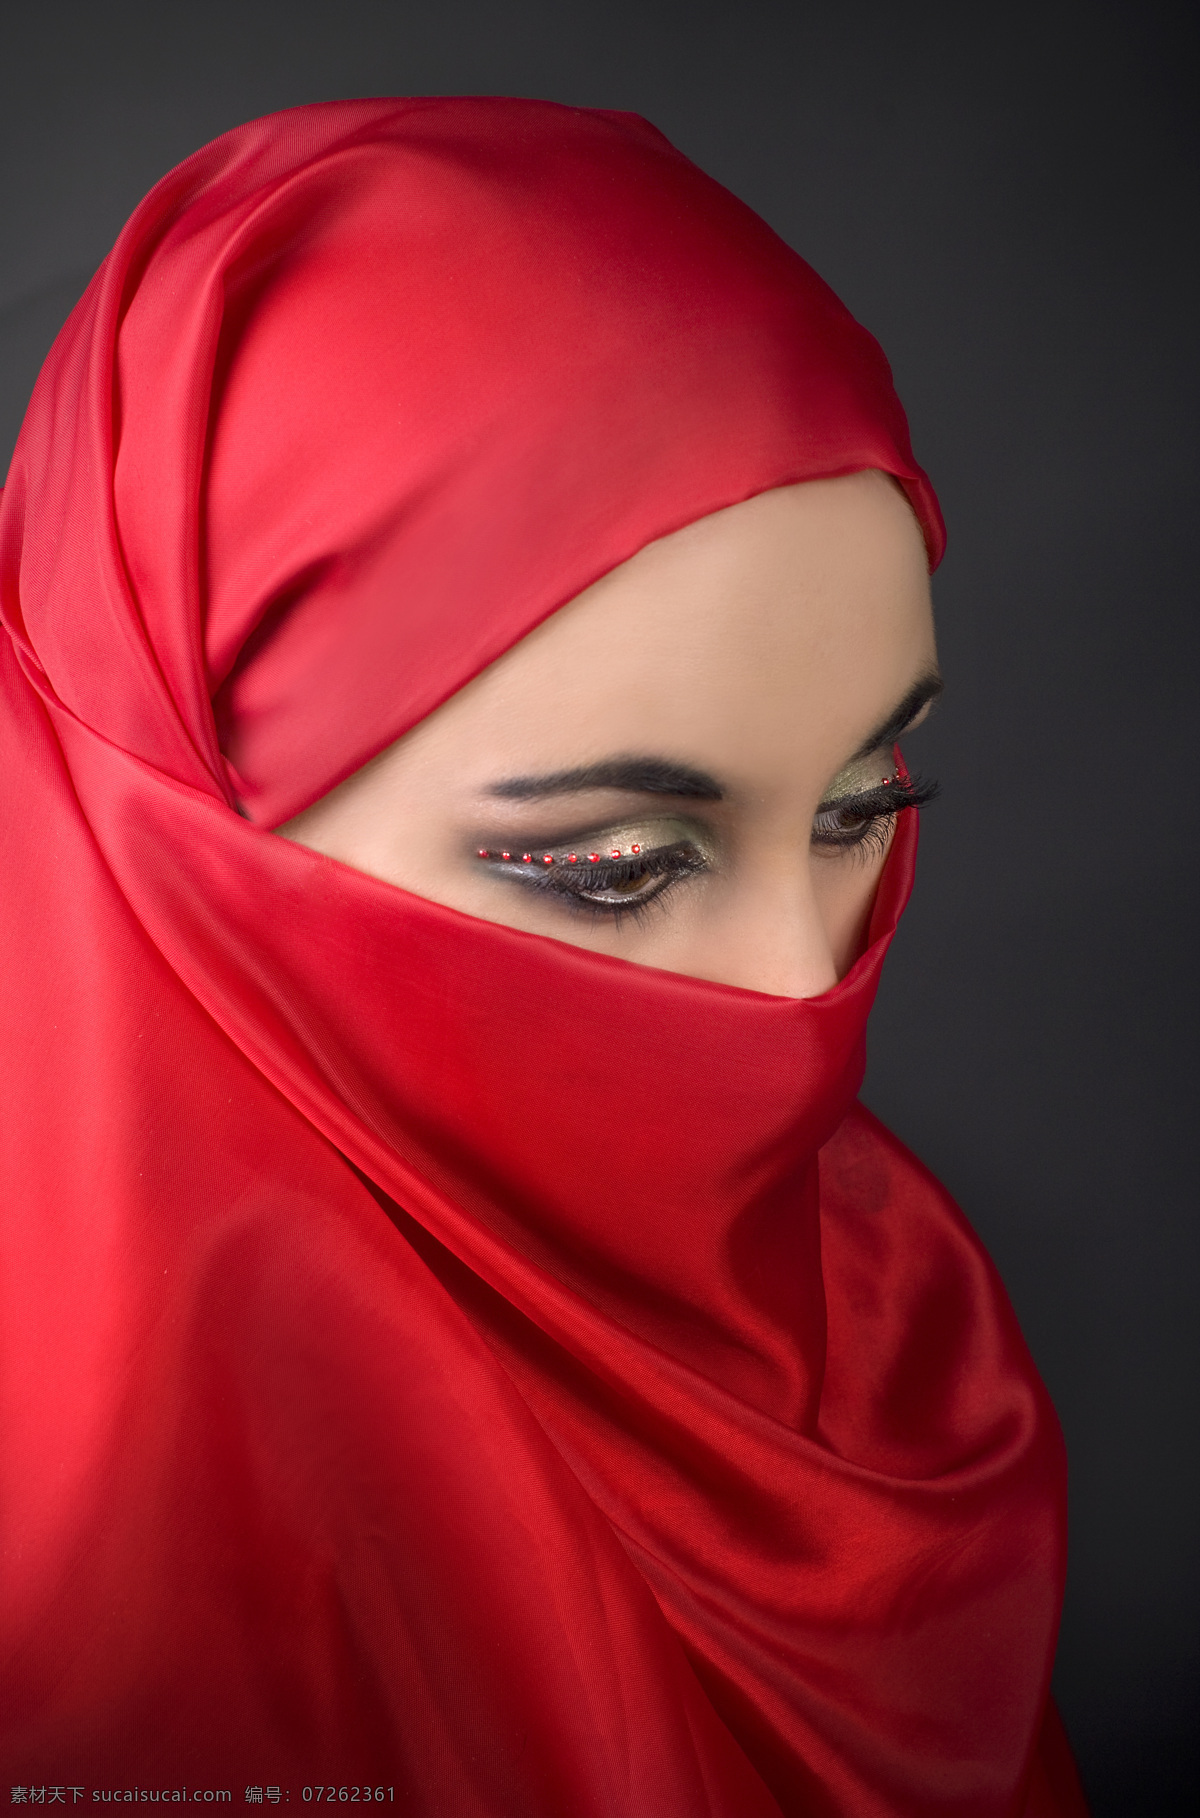 美丽 红衣 波斯 女郎 穆斯林女性 伊斯兰教美女 波斯女郎 漂亮女人 美丽女人 优雅女性 美女图片 人物图片